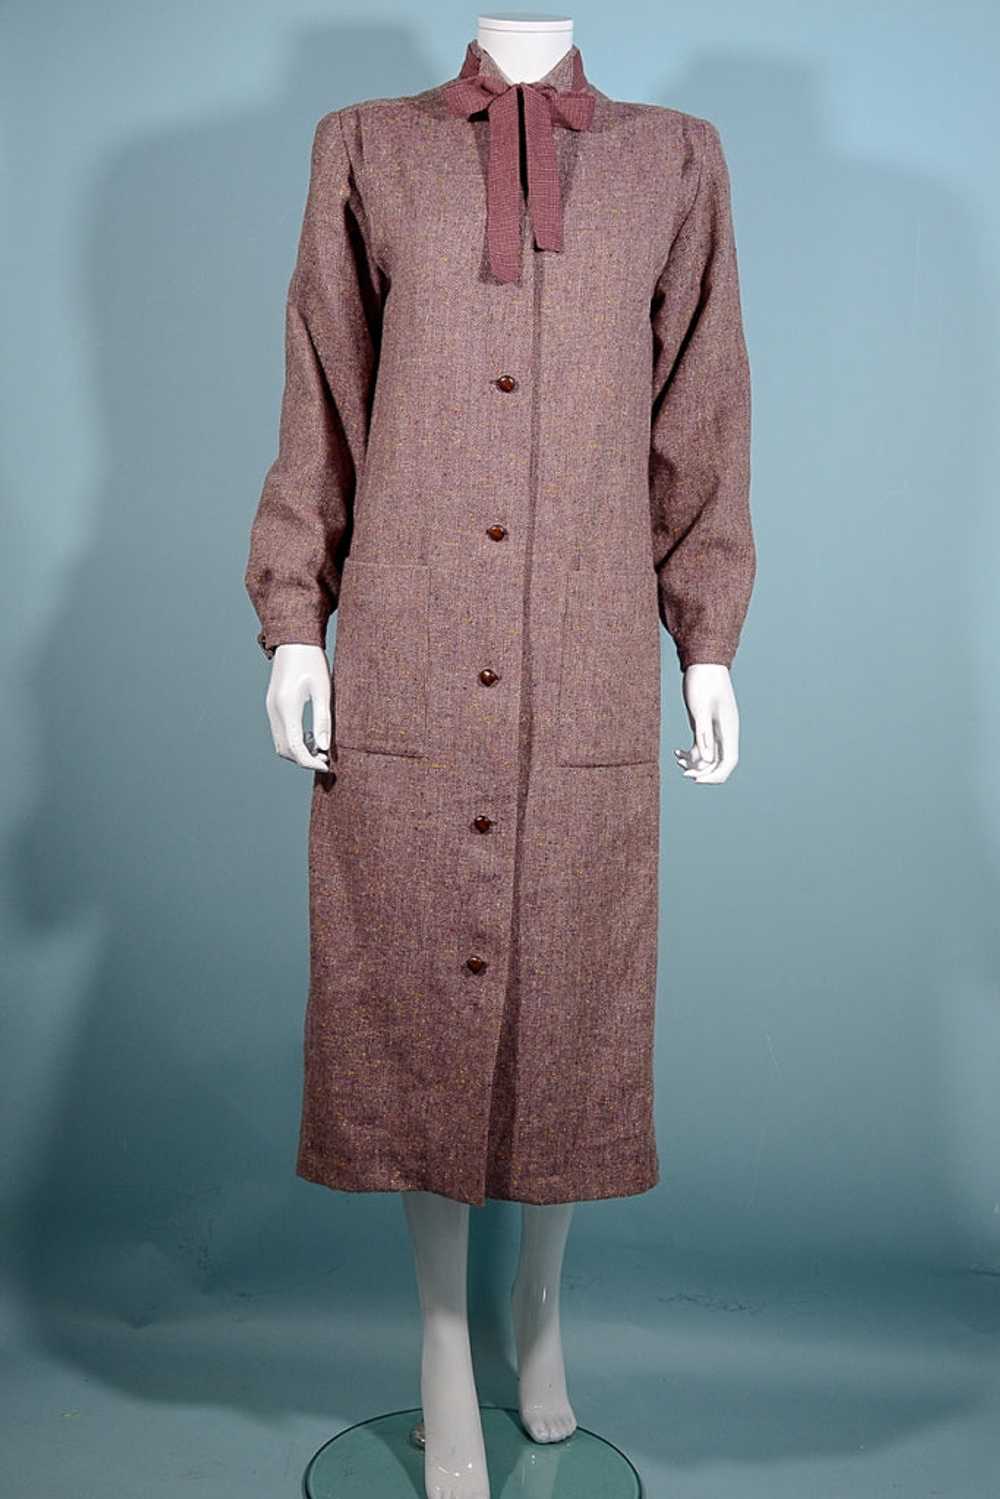 Vintage 70s Tweed Overcoat + Tie Neckline, Dark A… - image 3